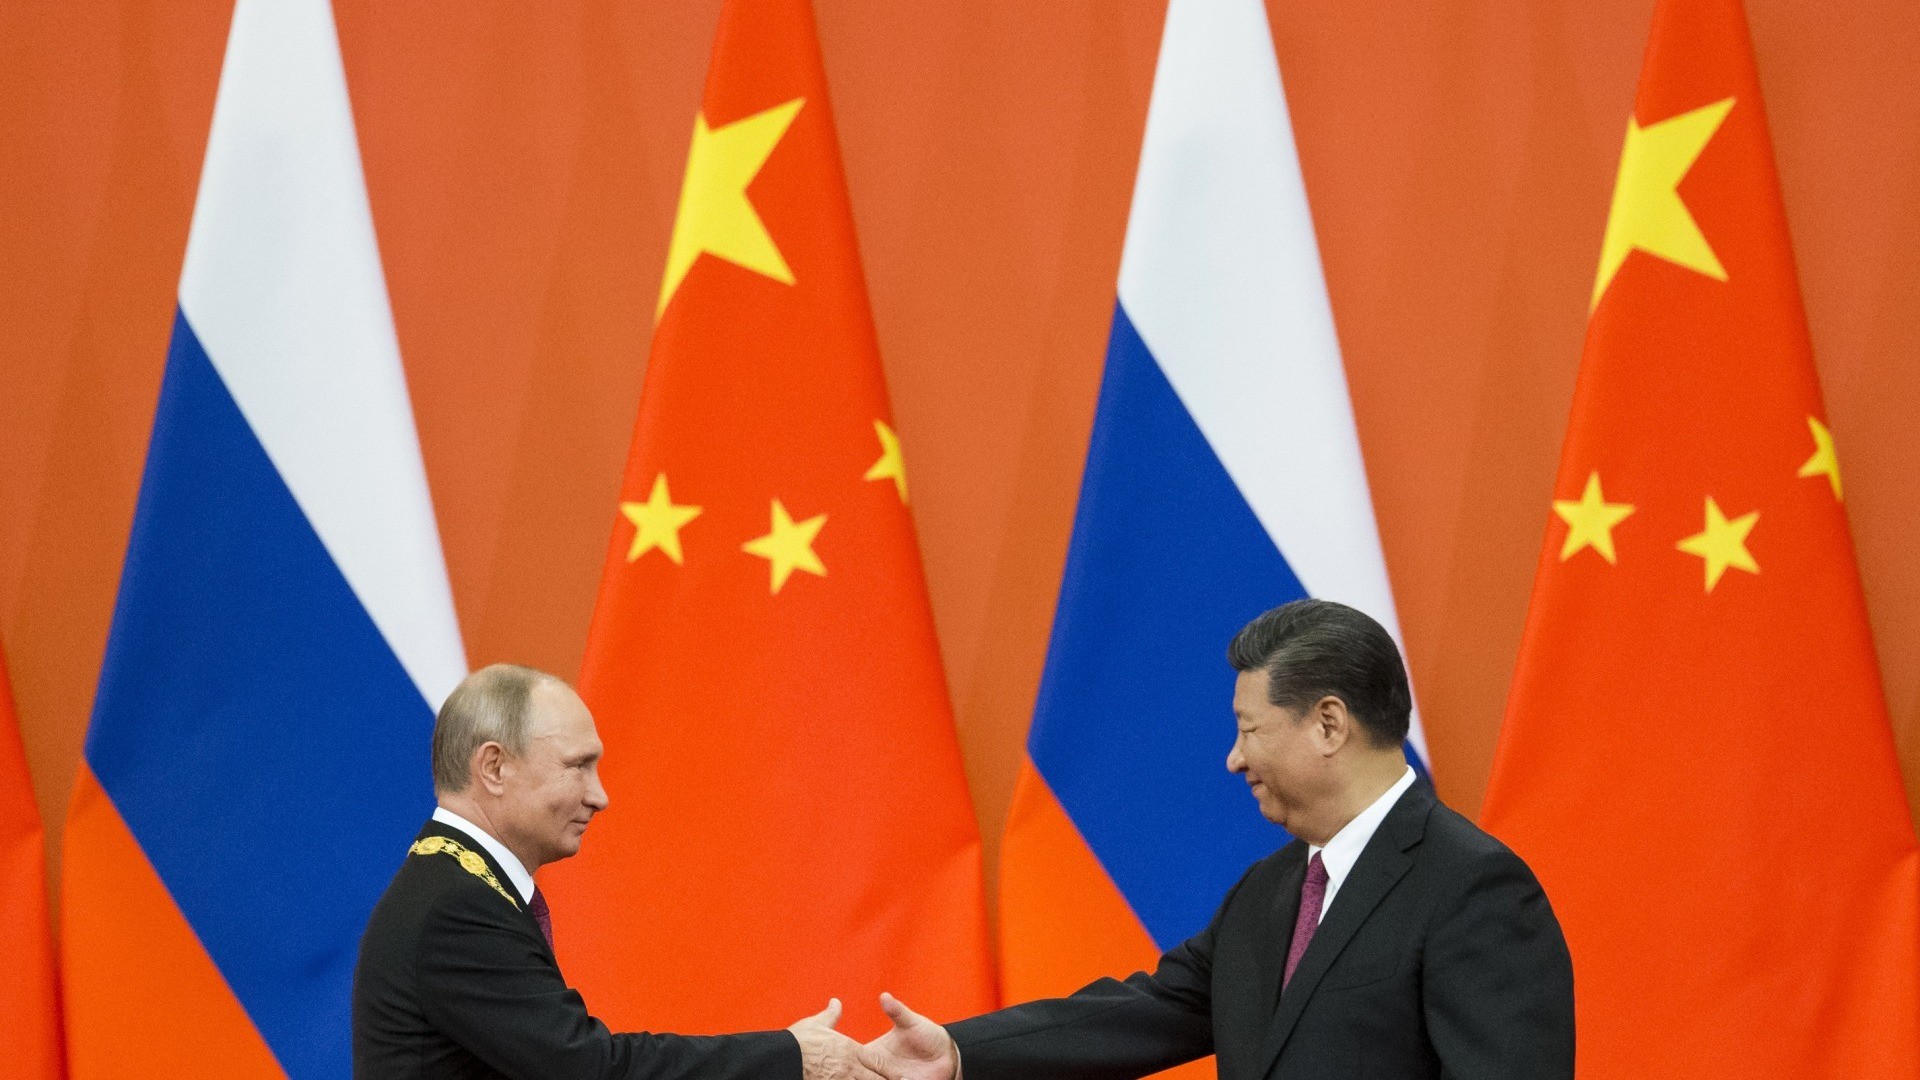 E' iniziato il vertice tra Putin e Xi Jinping: "Valutiamo il piano di Pace della Cina"